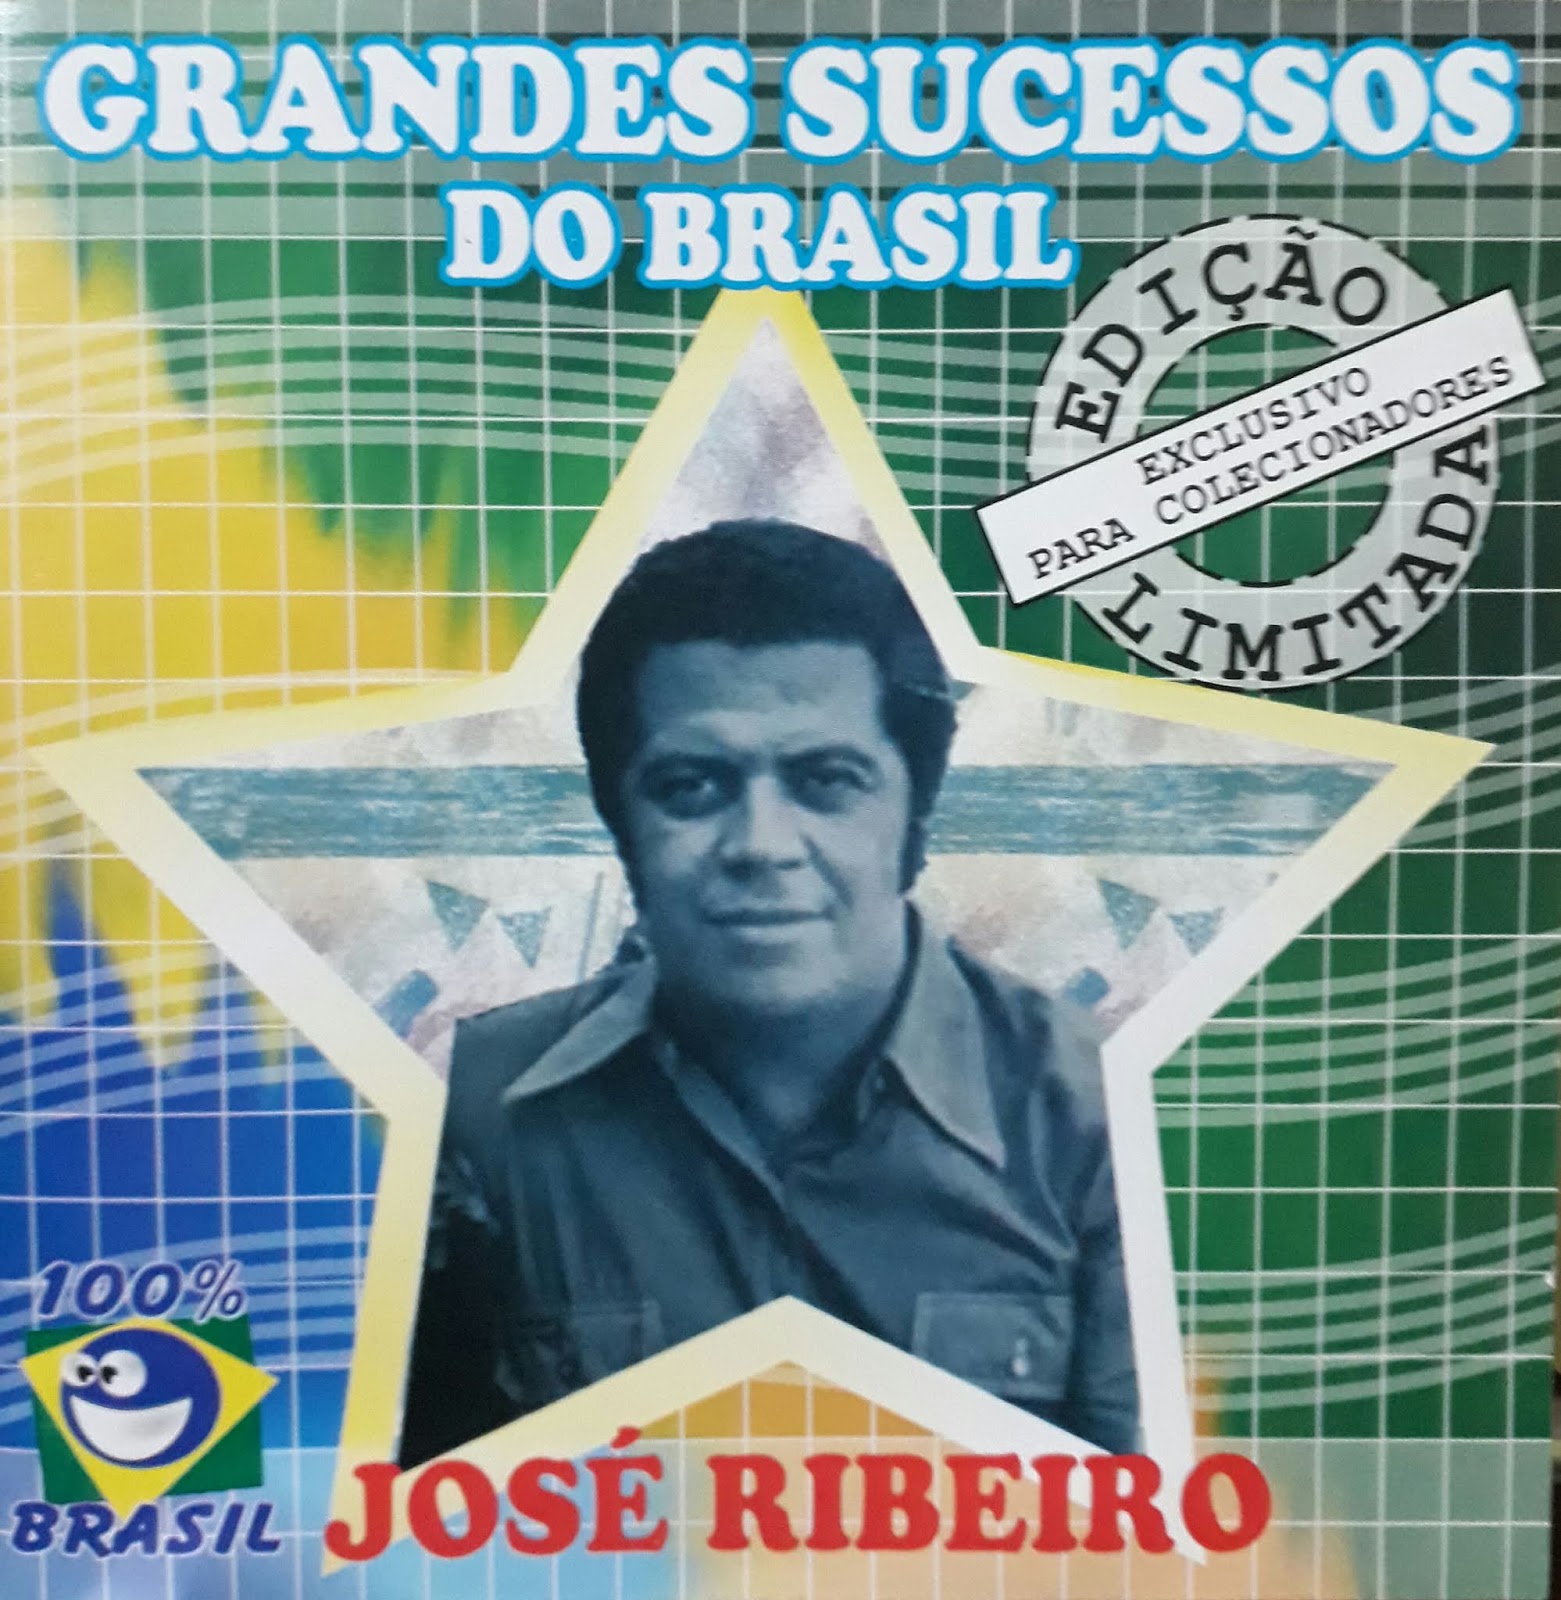 BLOG DO DANIEL SKITER 3: JOSÉ RIBEIRO - GRANDES SUCESSOS DO BRASIL